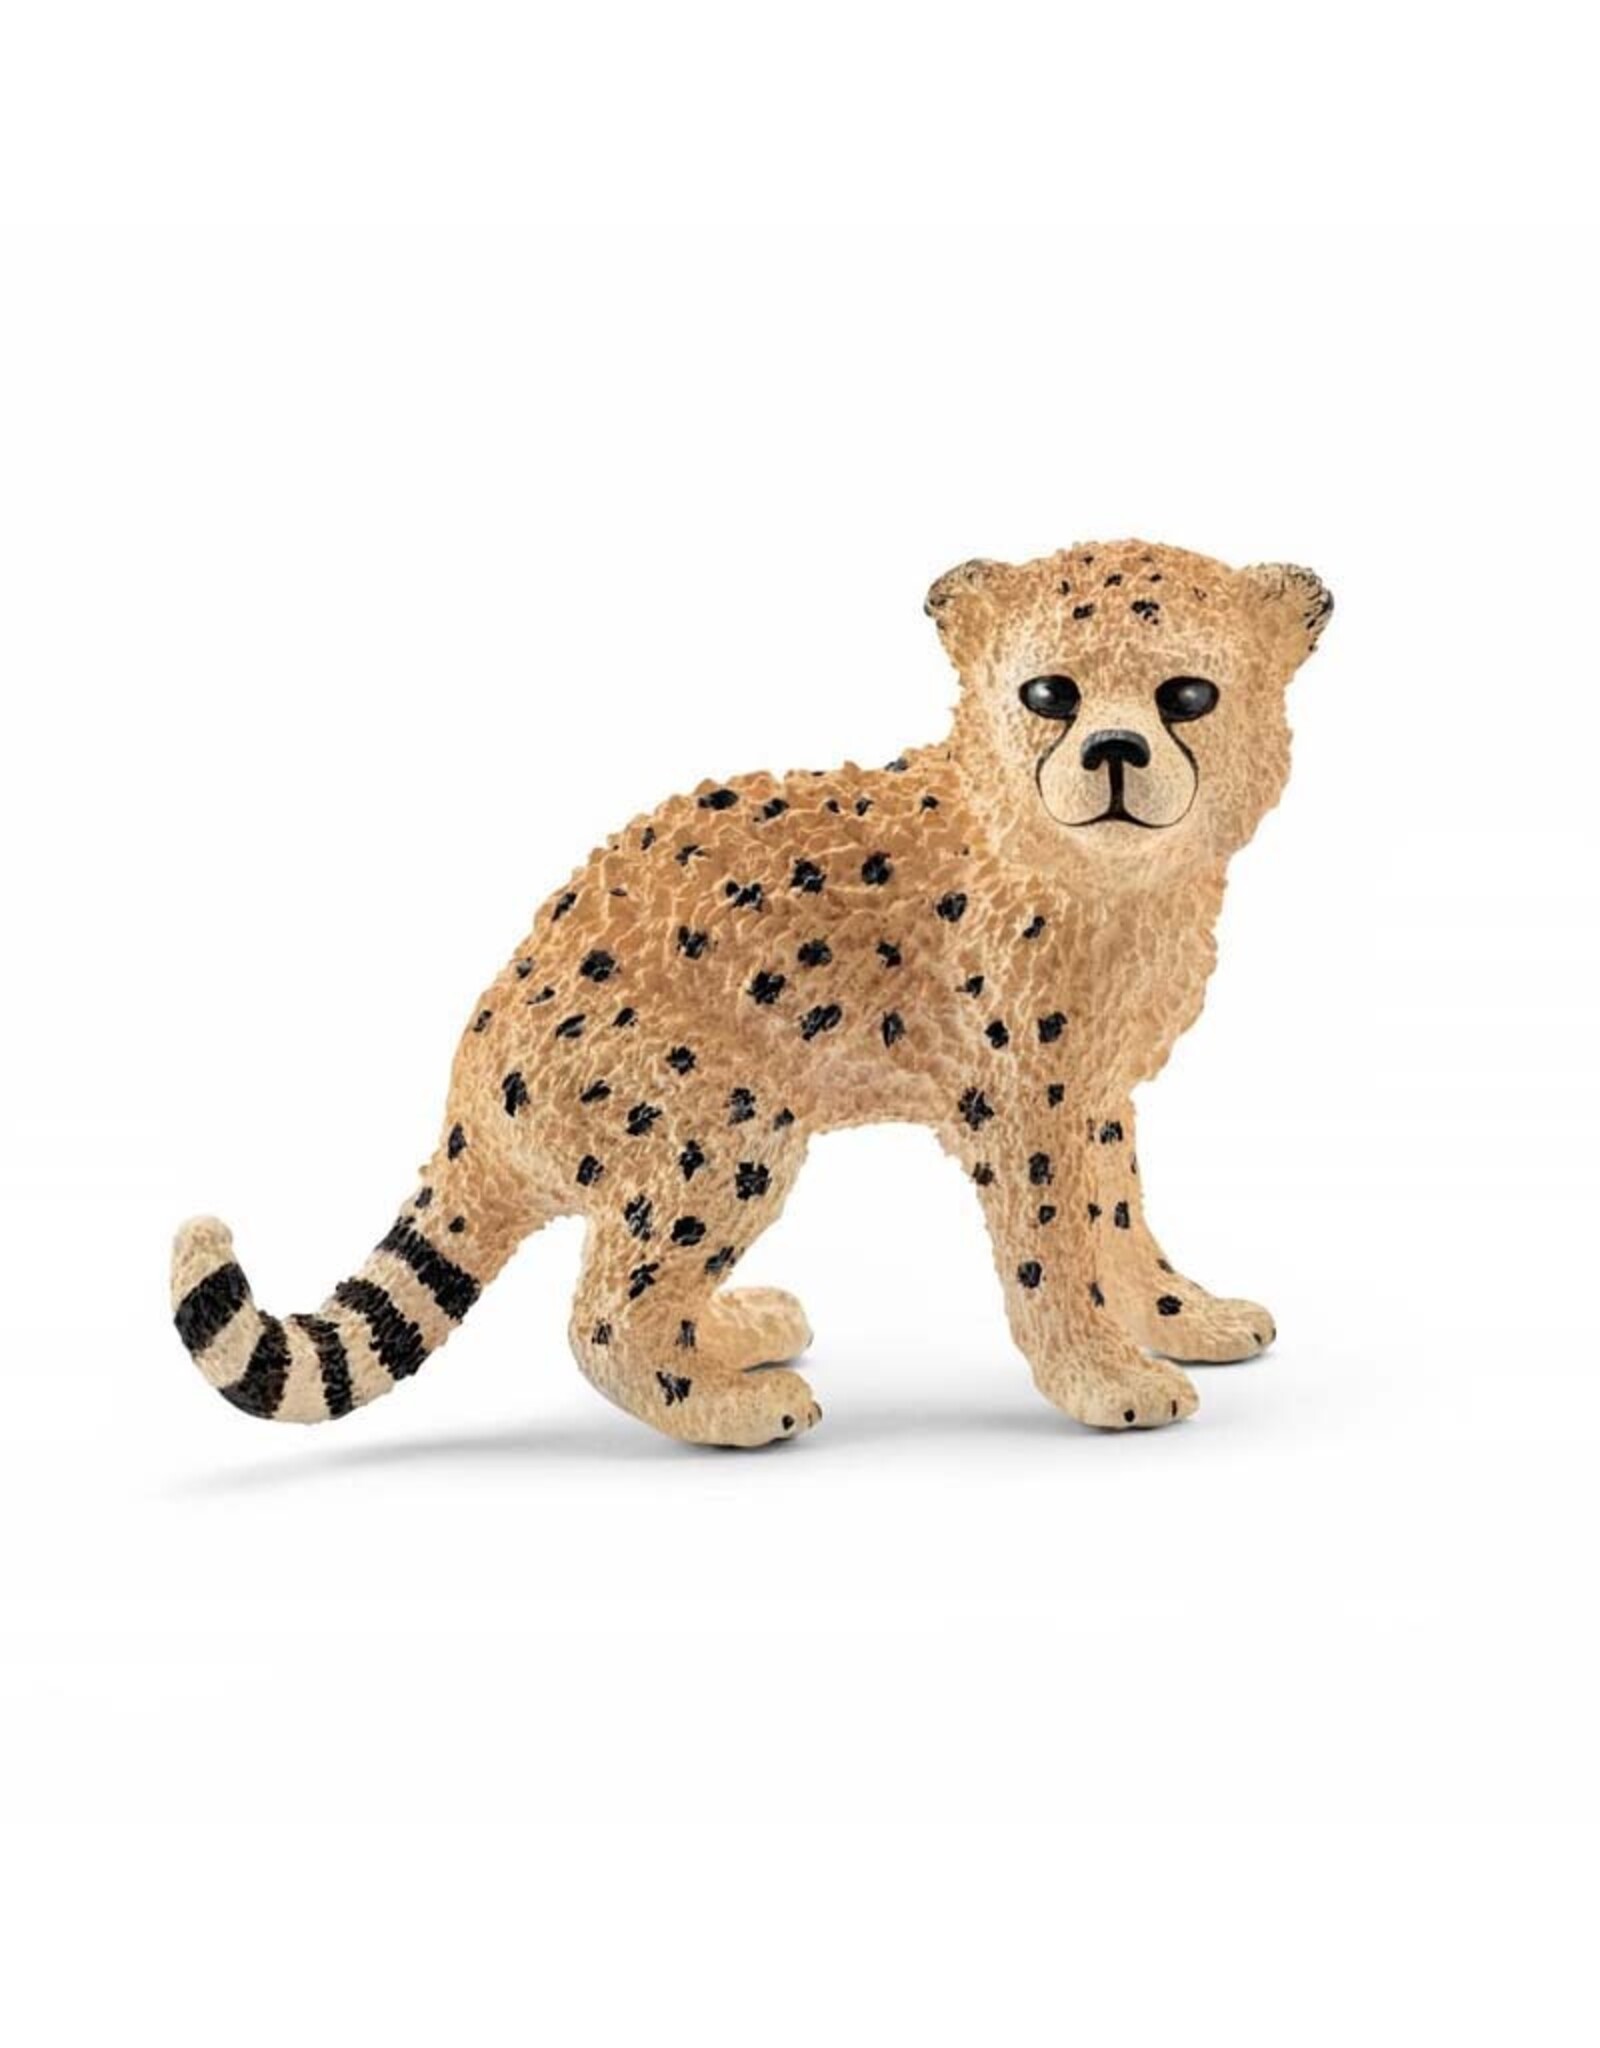 Schleich Schleich Cheetah Cub